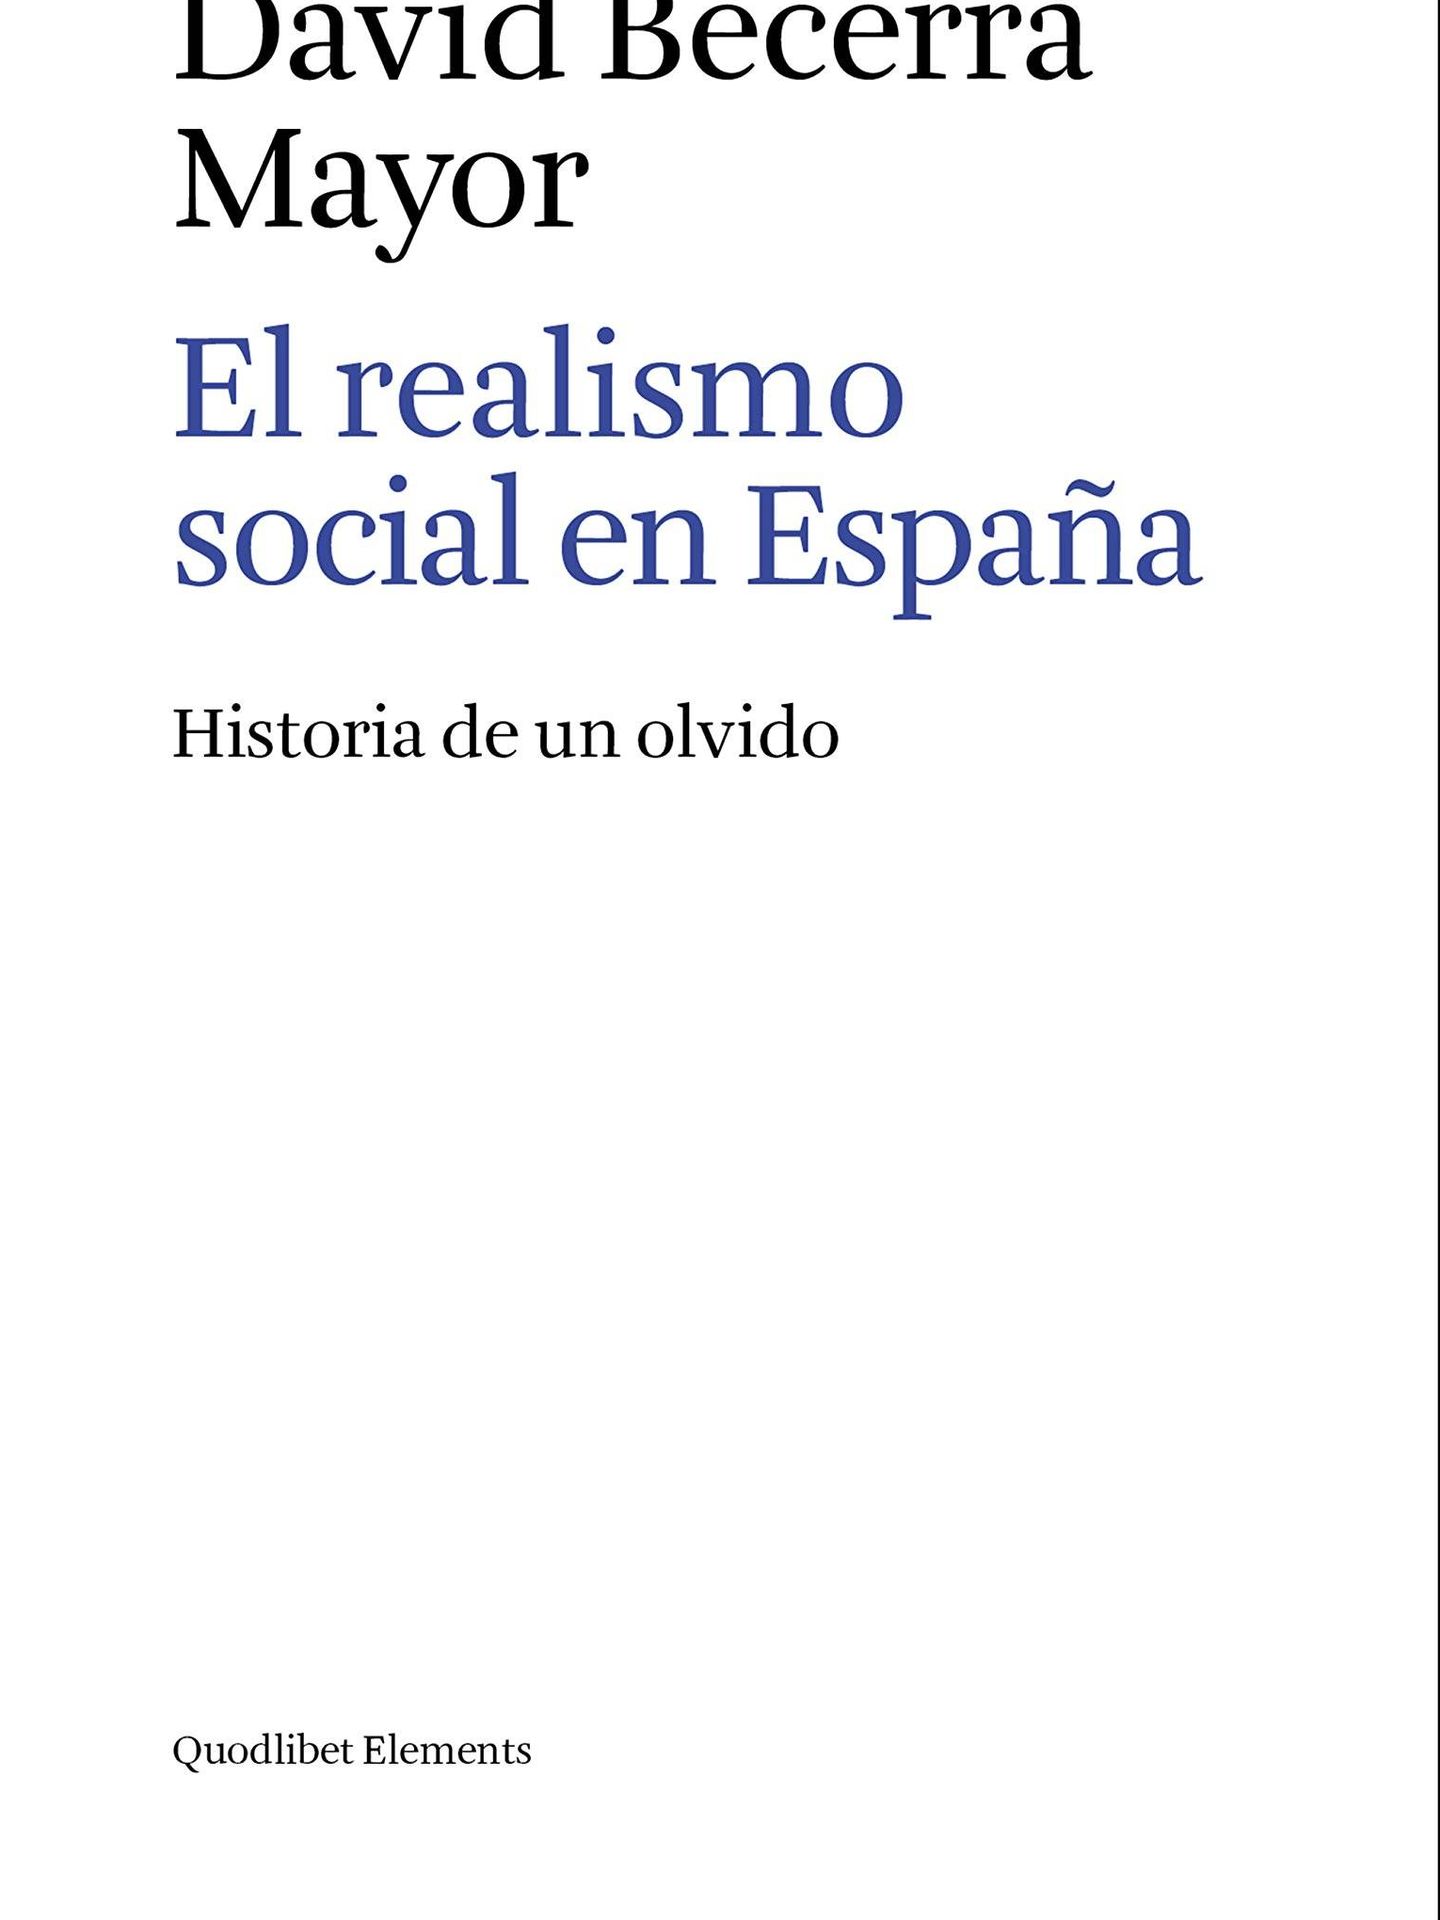 'El realismo social en España'